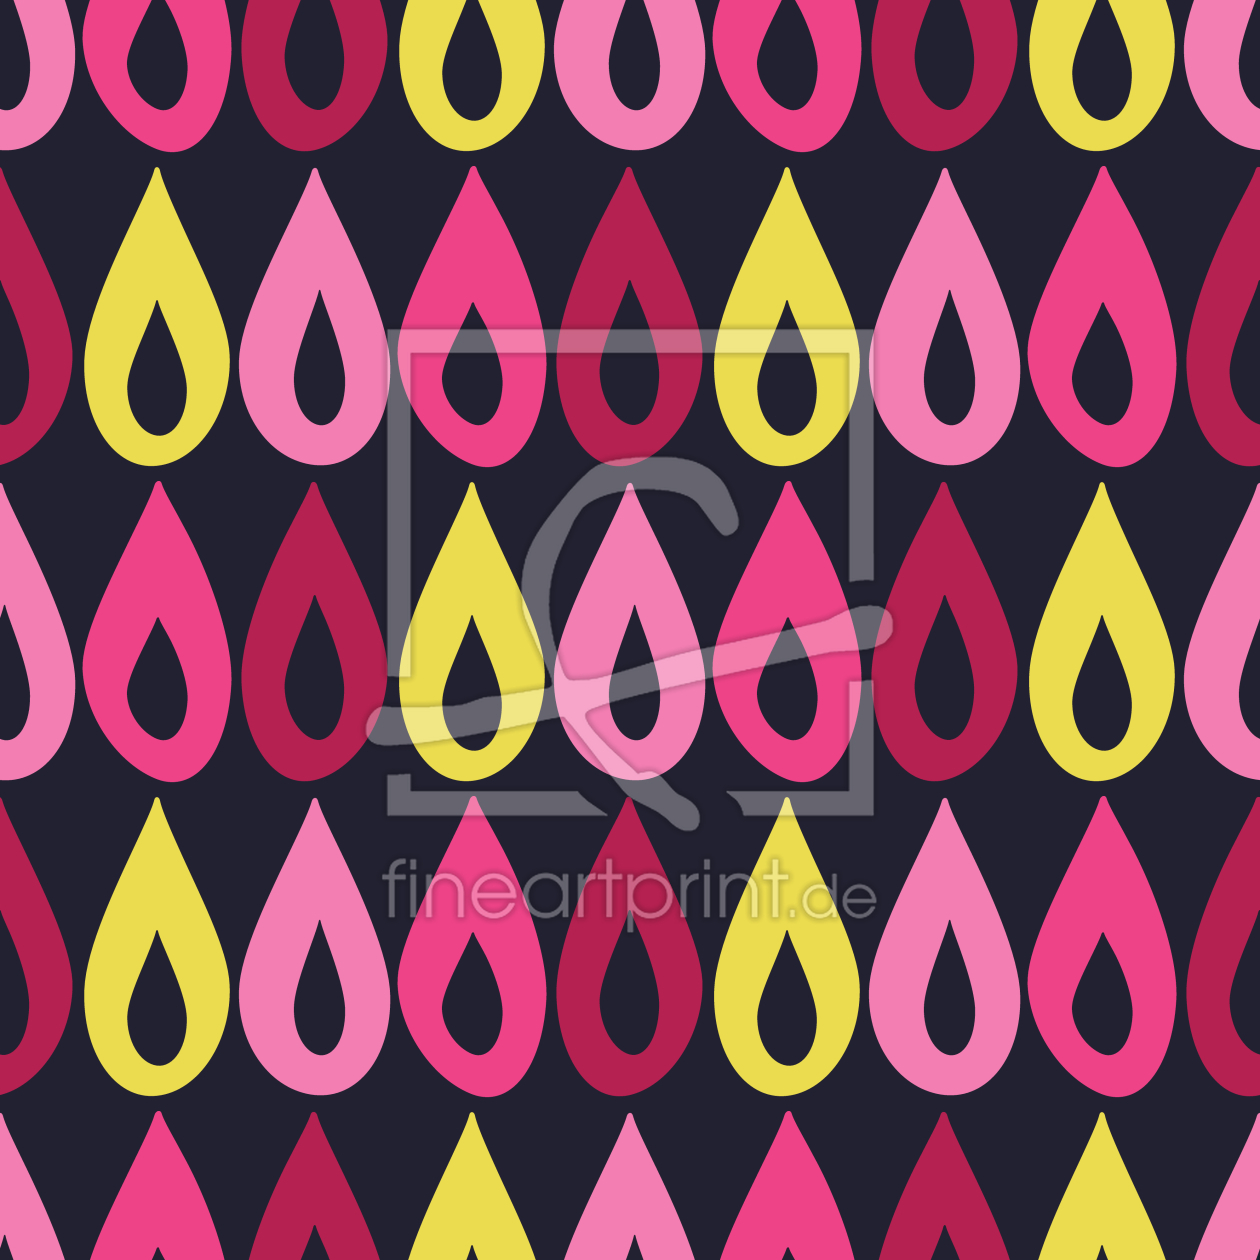 Bild-Nr.: 9015019 Reihe von Regentropfen erstellt von patterndesigns-com